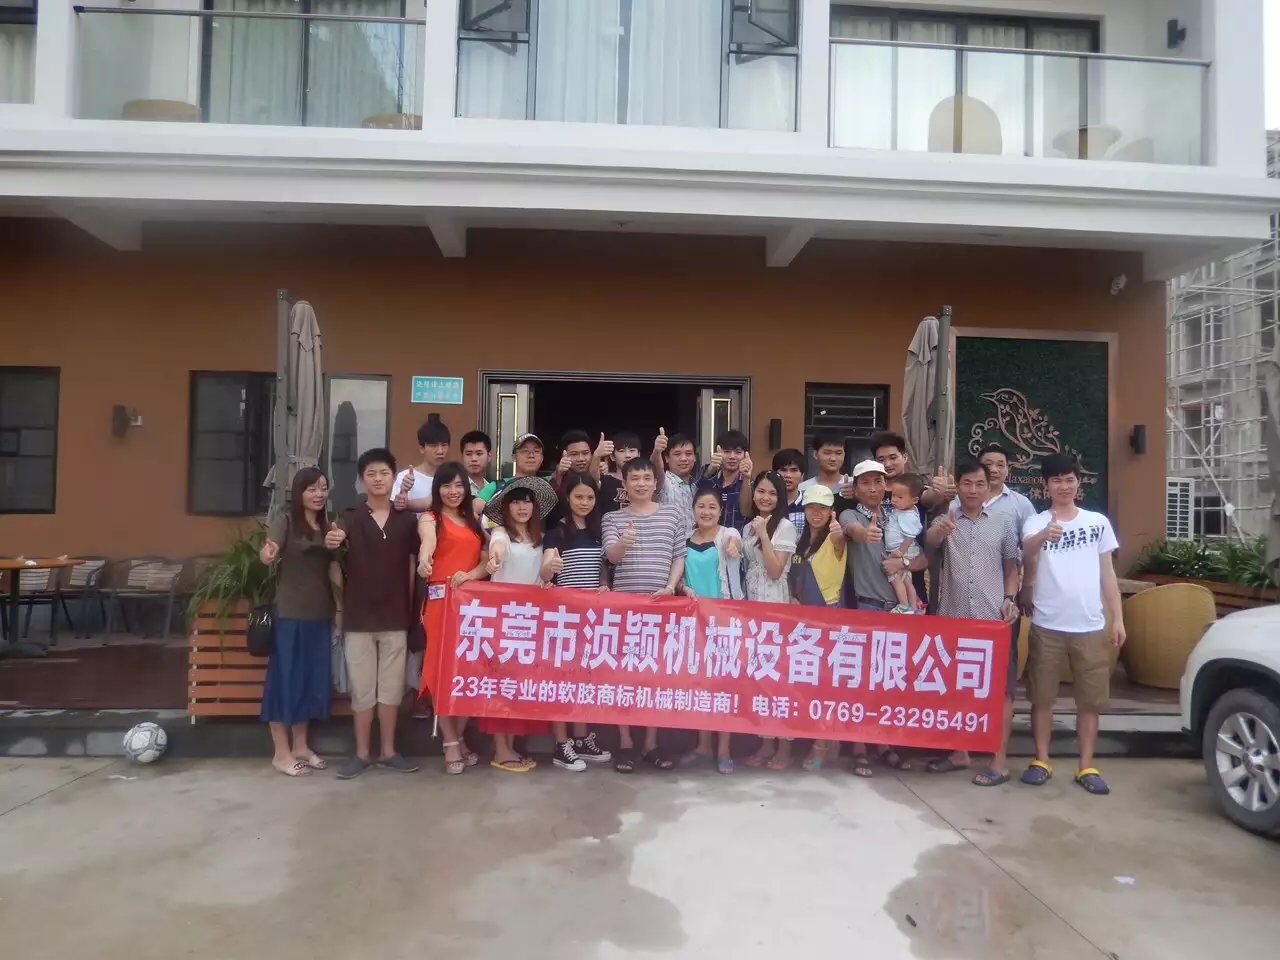 熱烈慶祝湞穎機械公司惠州雙月灣之旅圓滿落幕